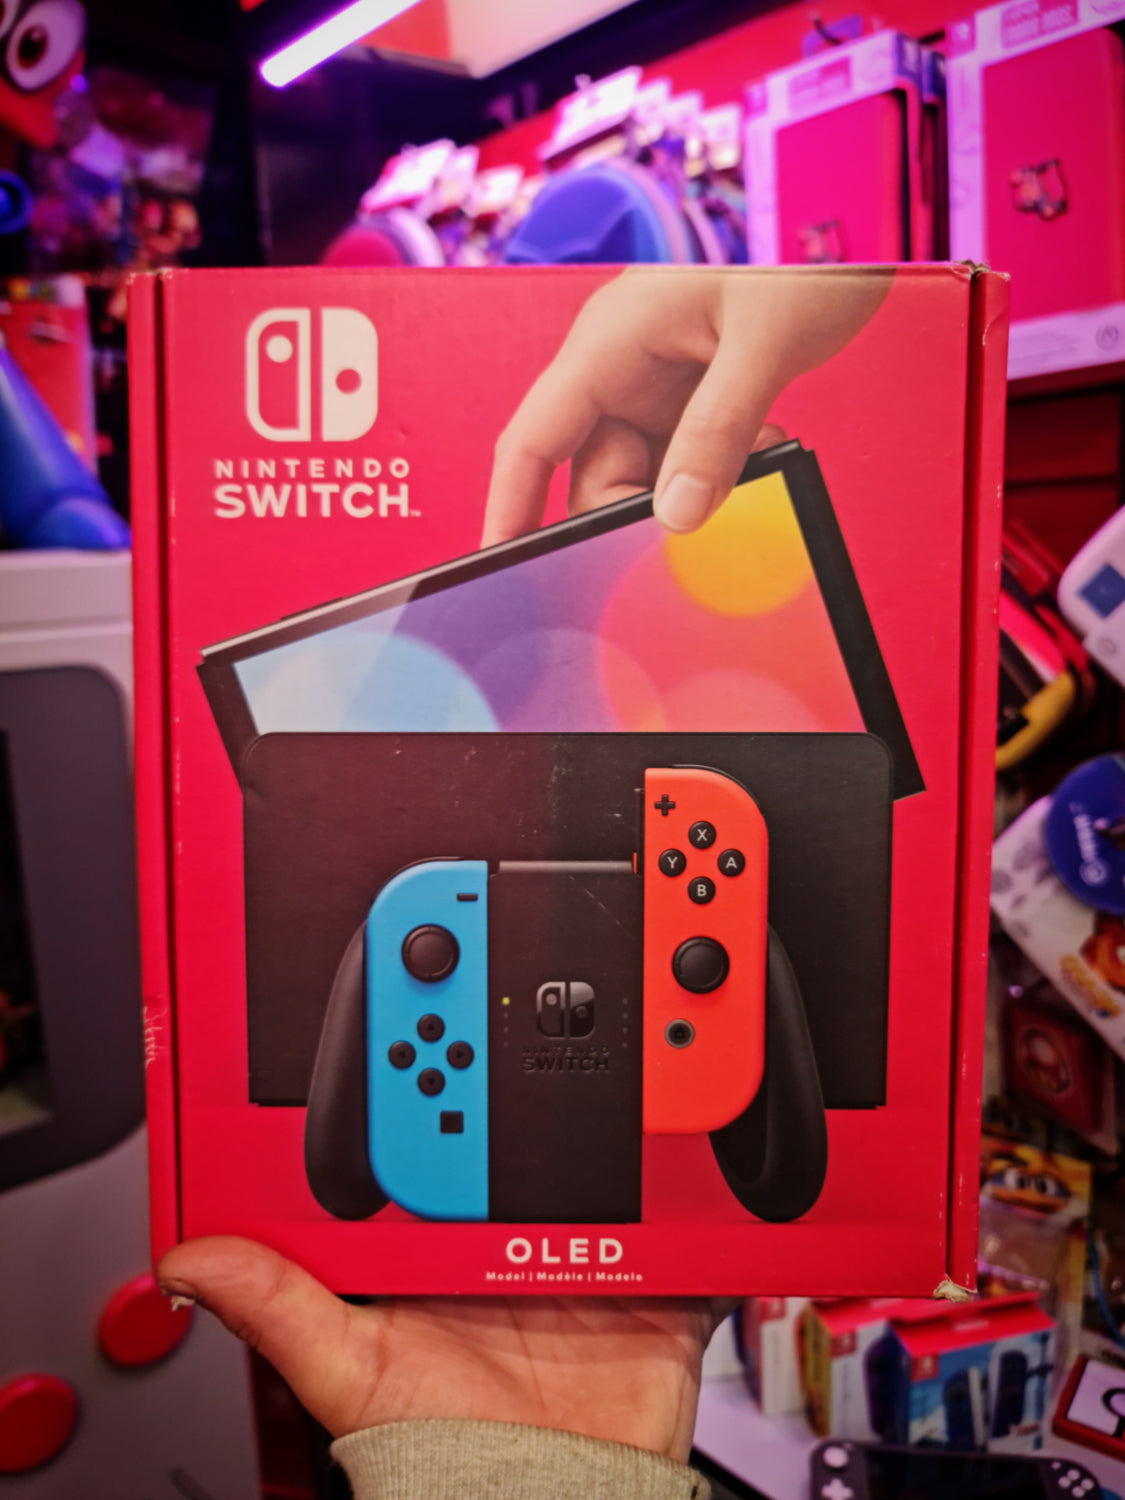 Nintendo Switch - ¡Descubrid la región de Sinnoh con un aspecto